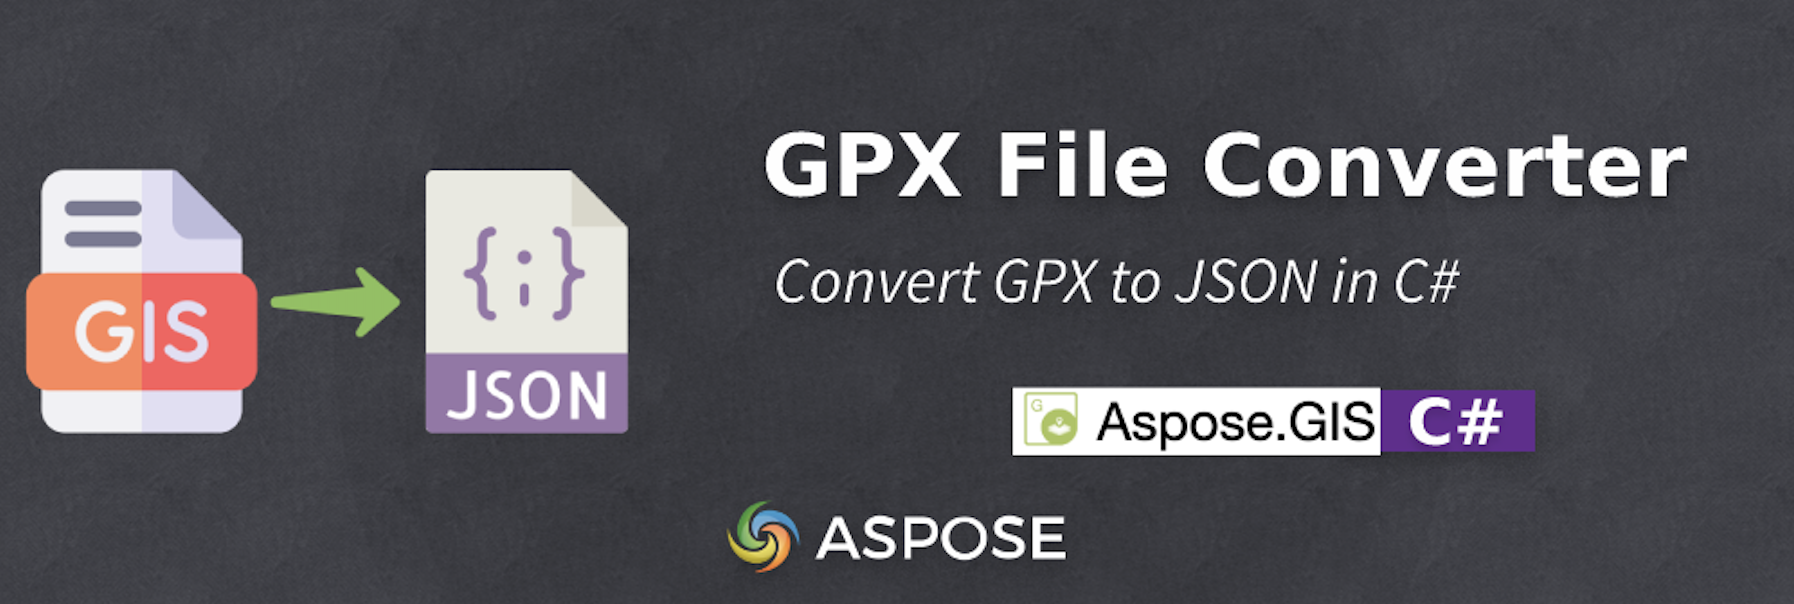 Converti GPX in JSON in C# - Convertitore di file GPX